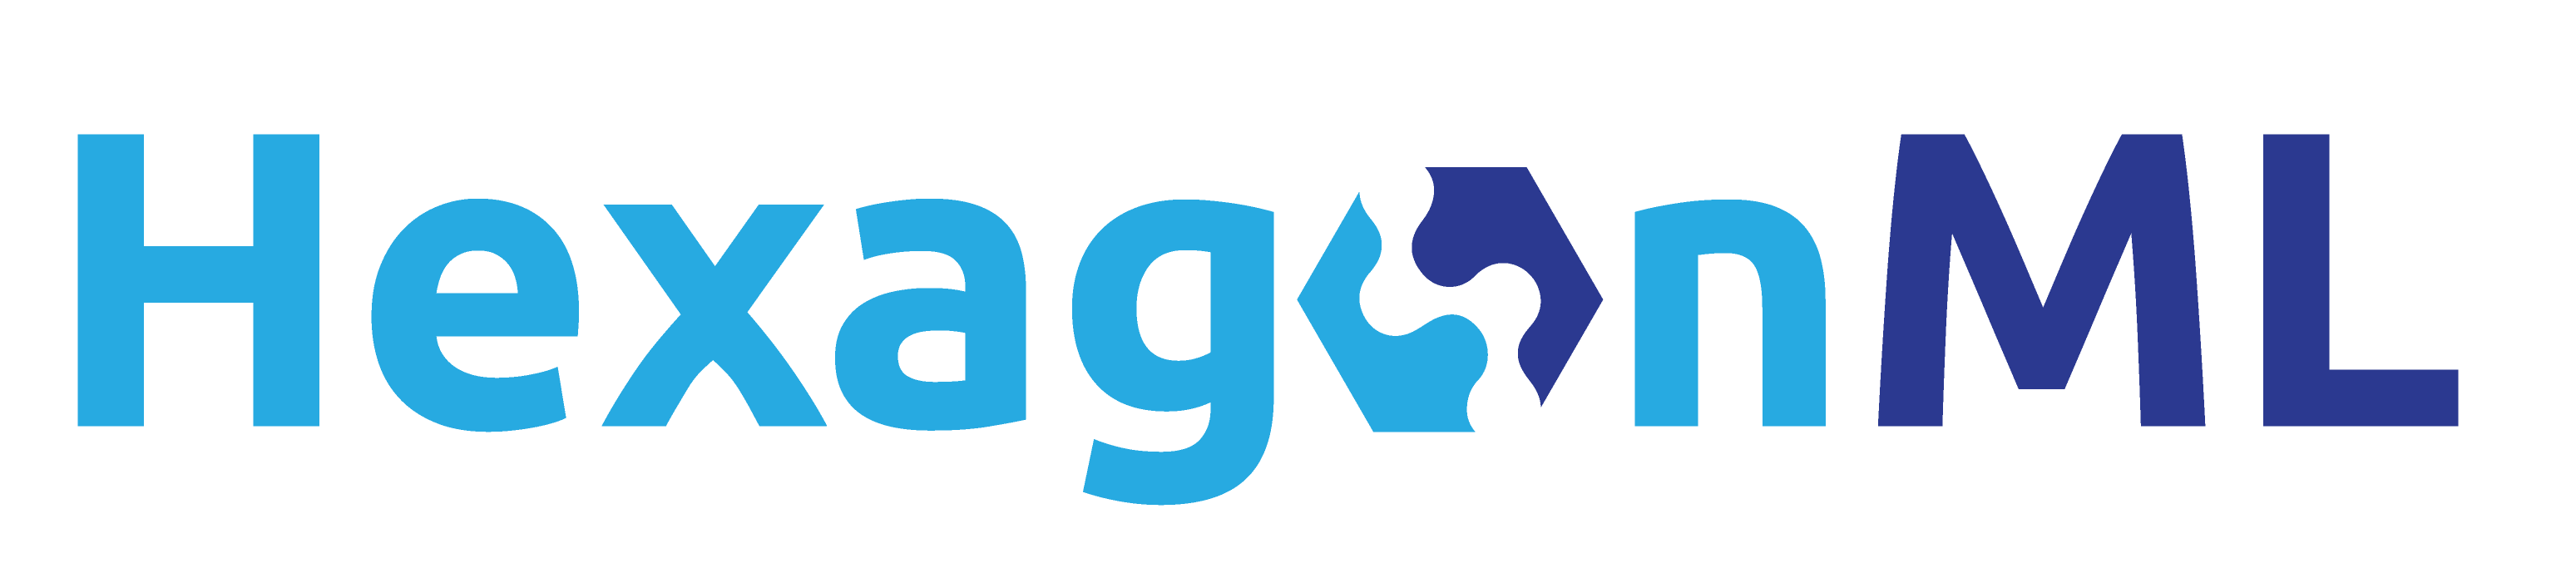 hexagon-ml-logo